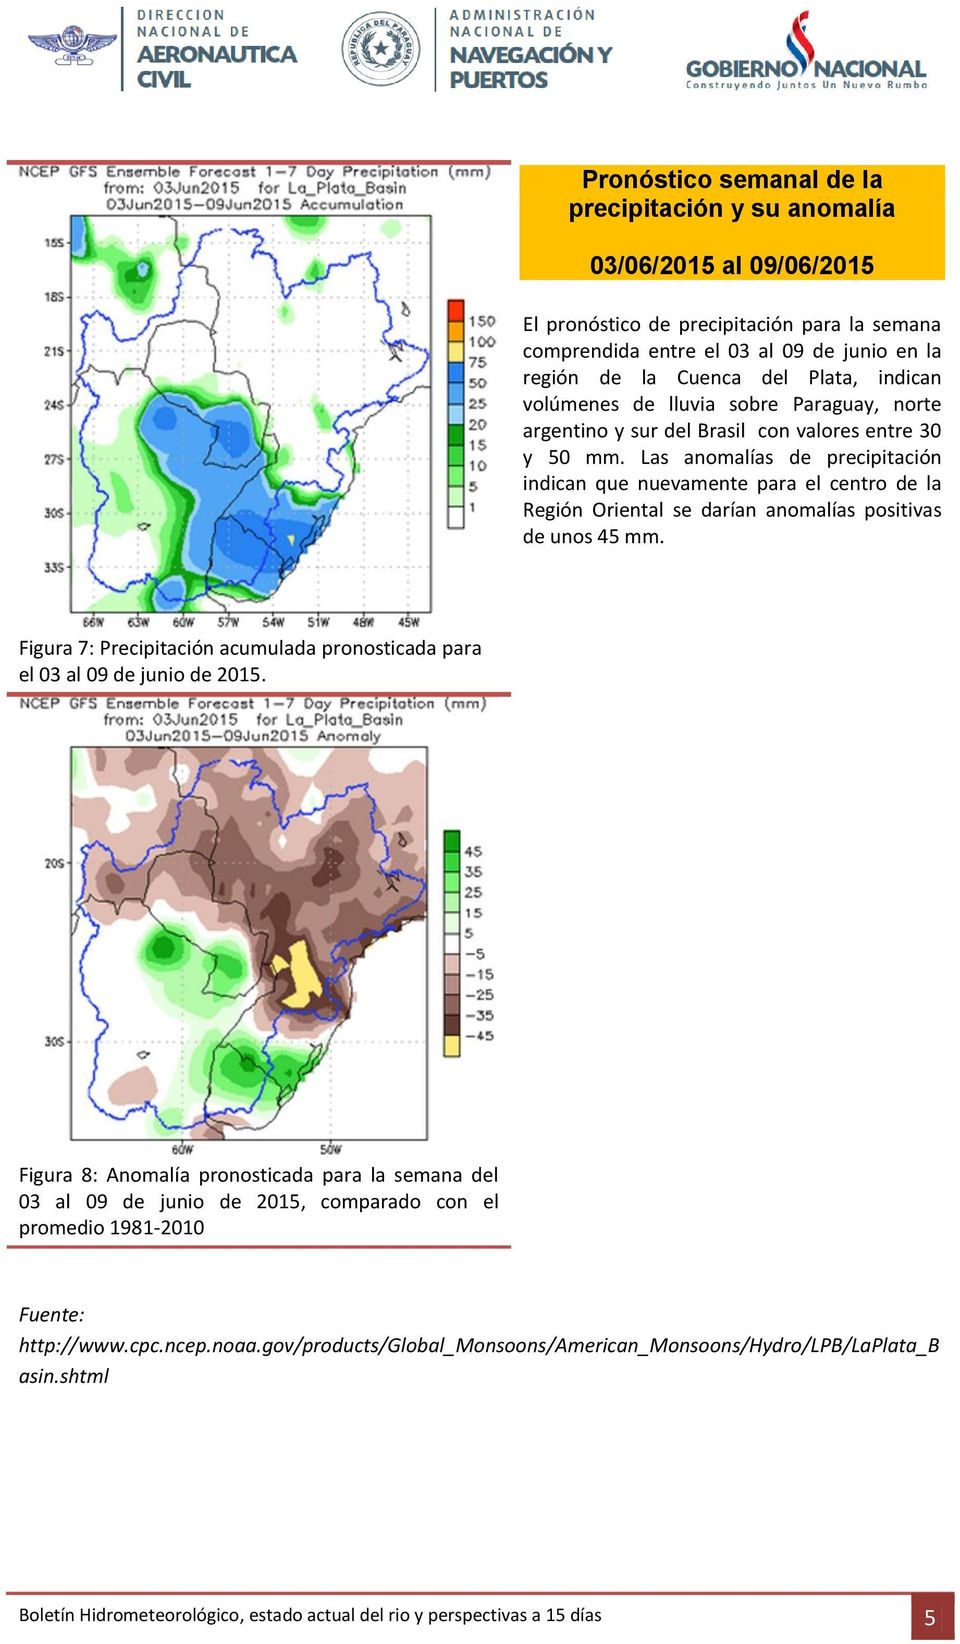 Las anomalías de precipitación indican que nuevamente para el centro de la Región Oriental se darían anomalías positivas de unos 45 mm.